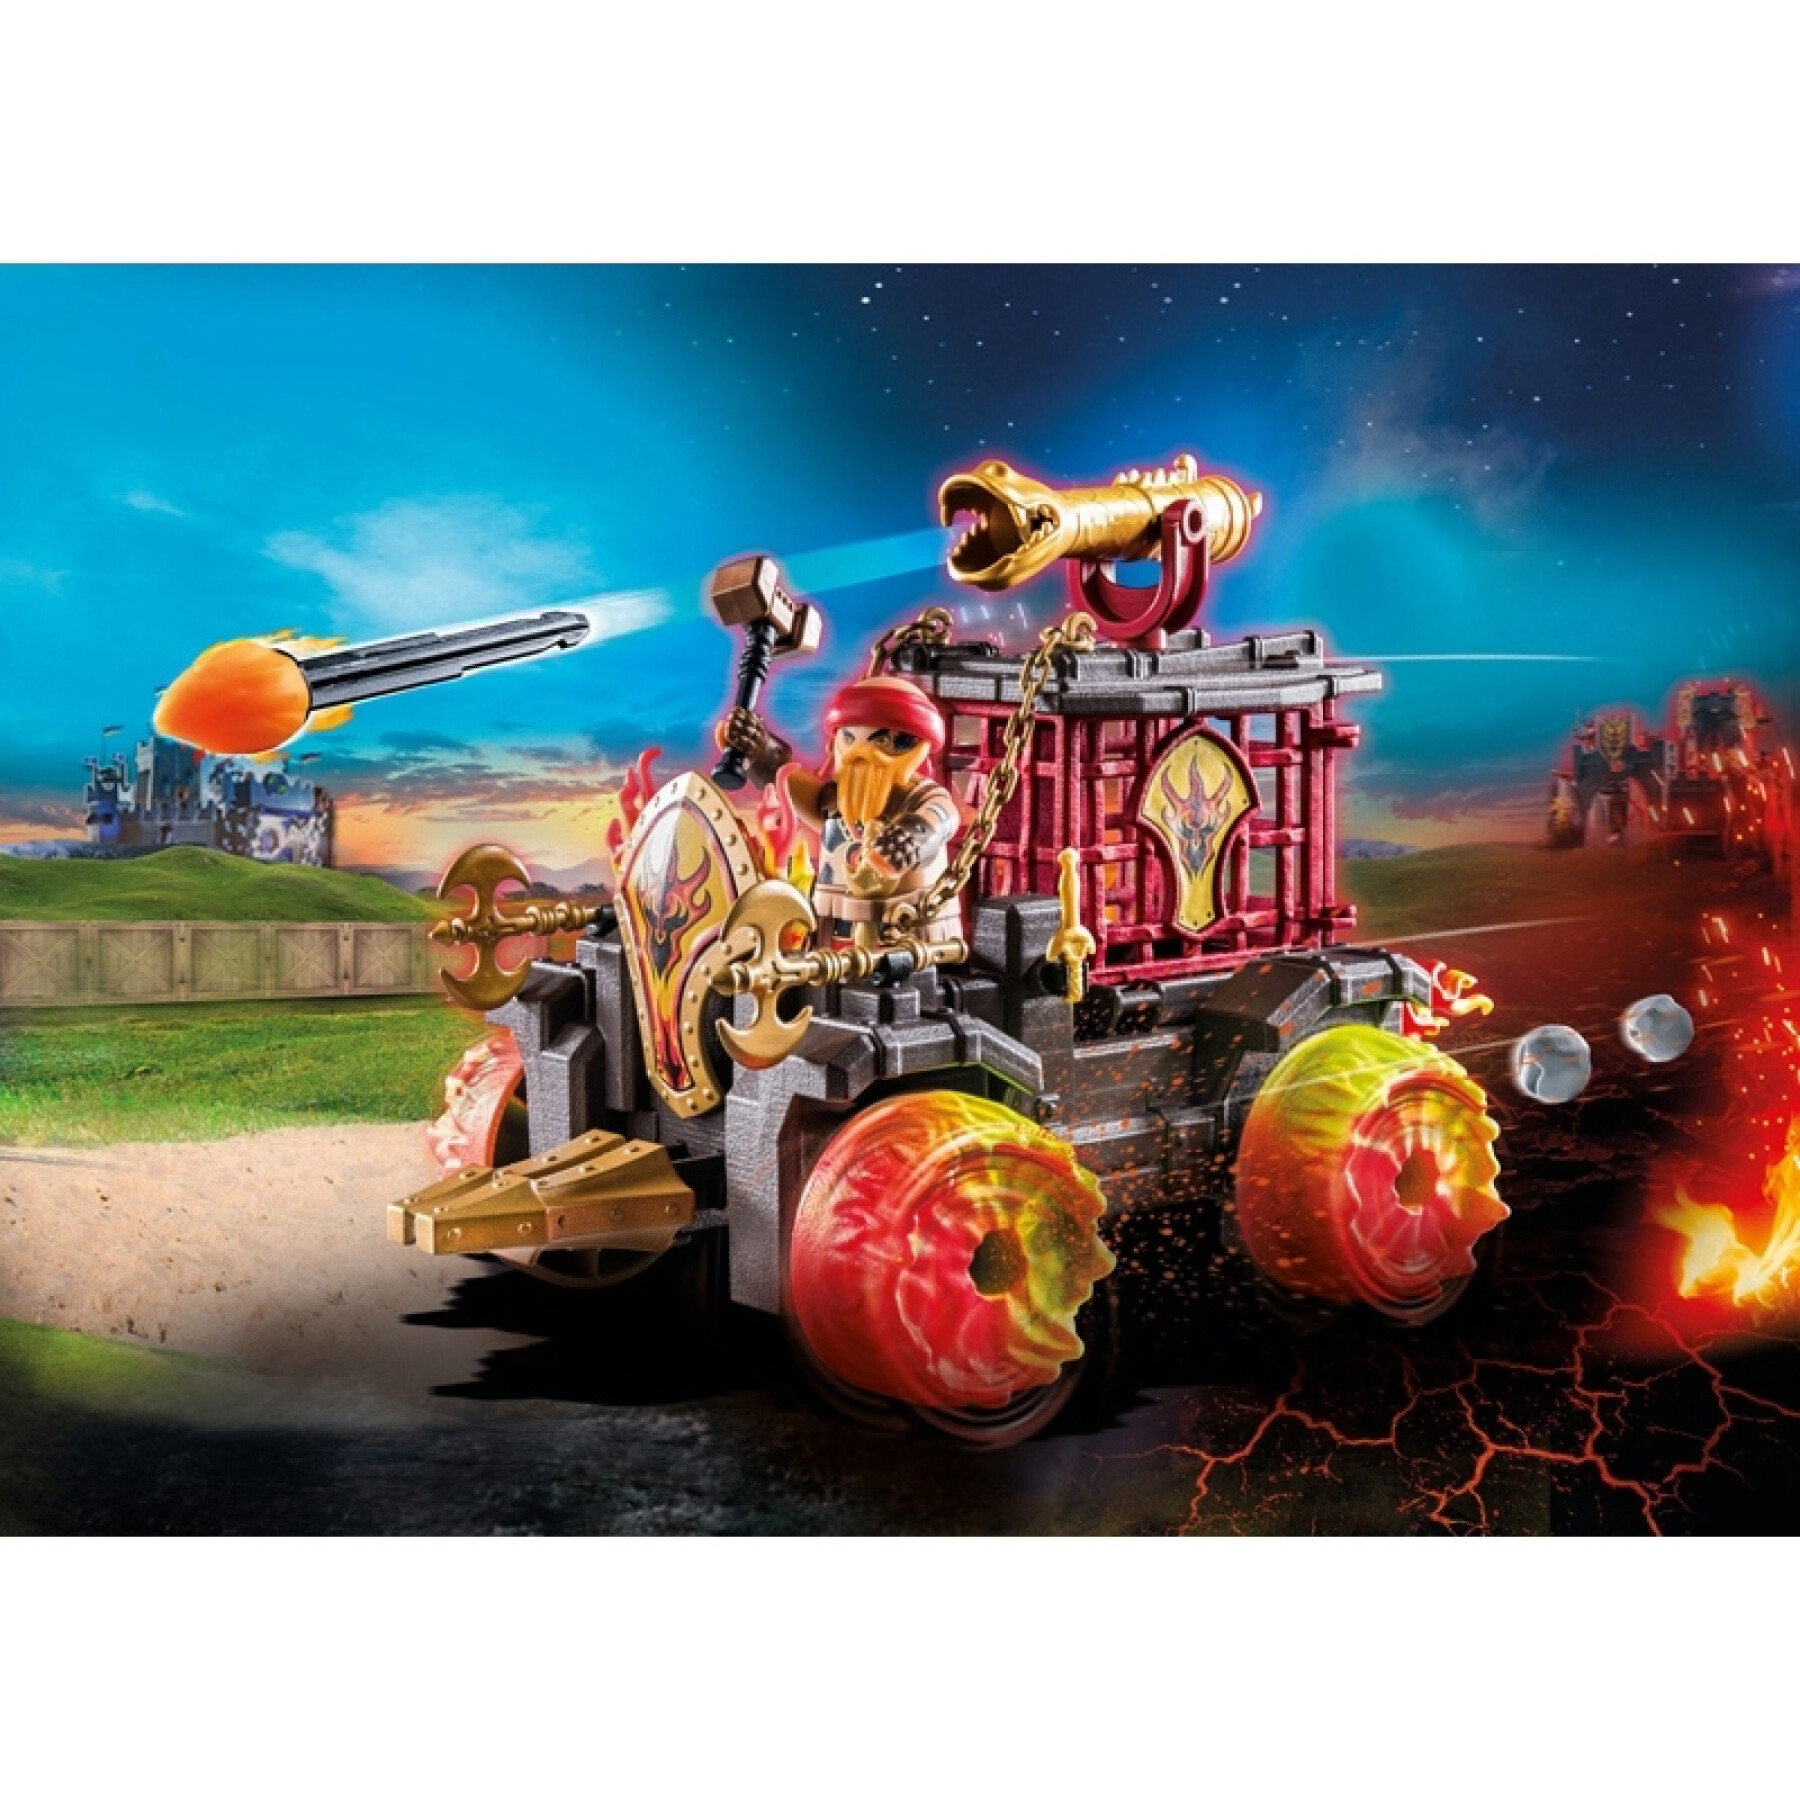 Jeux de construction chariot enflammé burnham raiders Playmobil